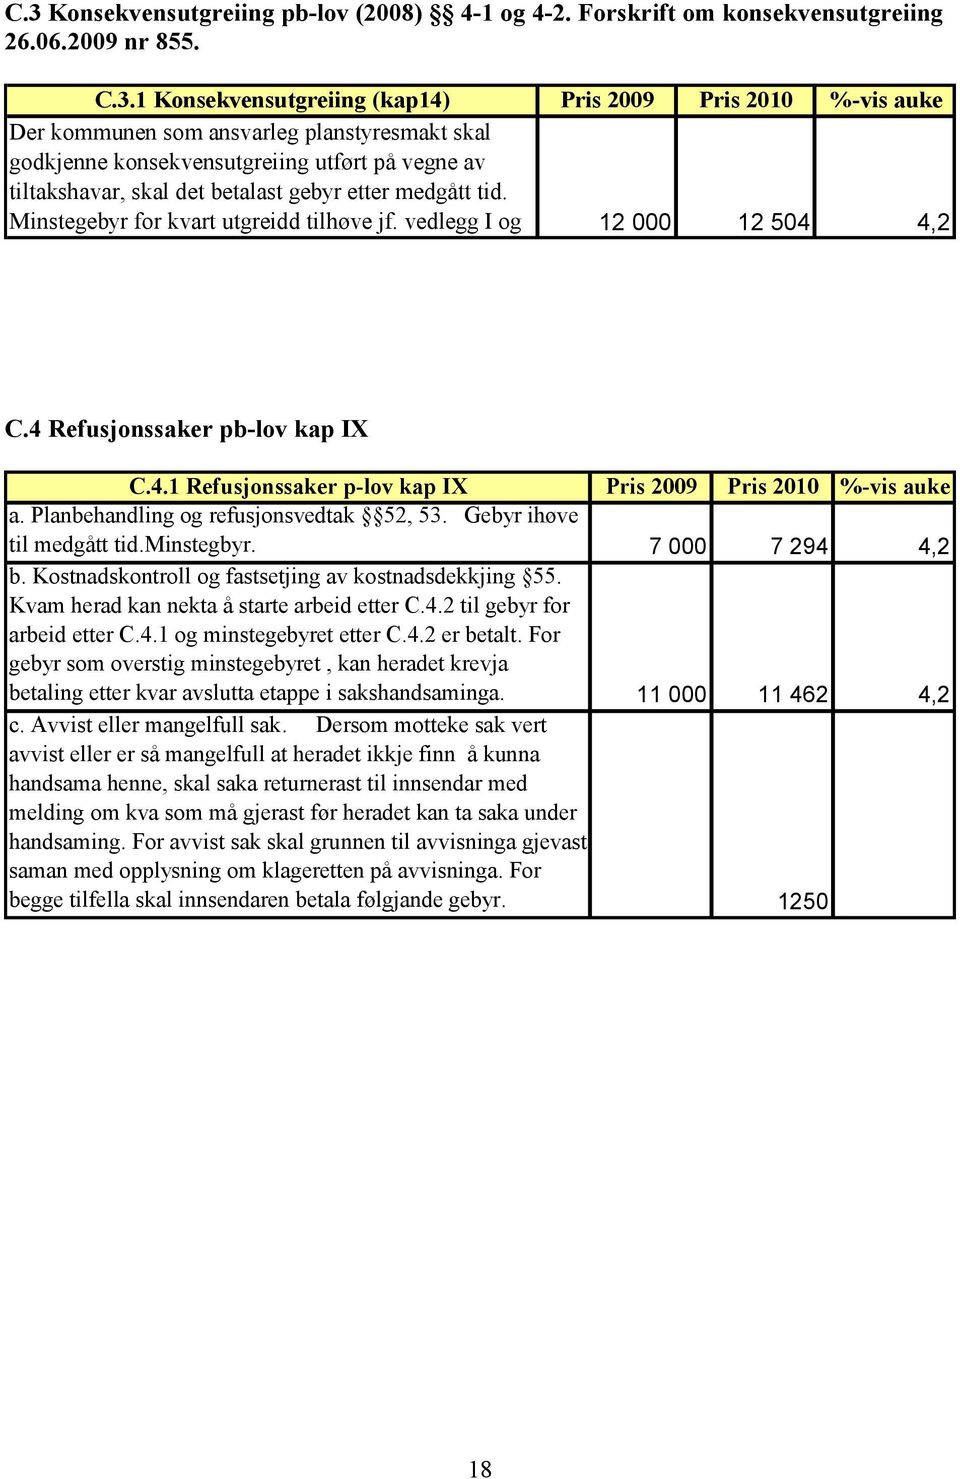 vedlegg I og II i forskrifta 12 000 12 504 4,2 C.4 Refusjonssaker pb-lov kap IX C.4.1 Refusjonssaker p-lov kap IX Pris 2009 Pris 2010 %-vis auke a. Planbehandling og refusjonsvedtak 52, 53.